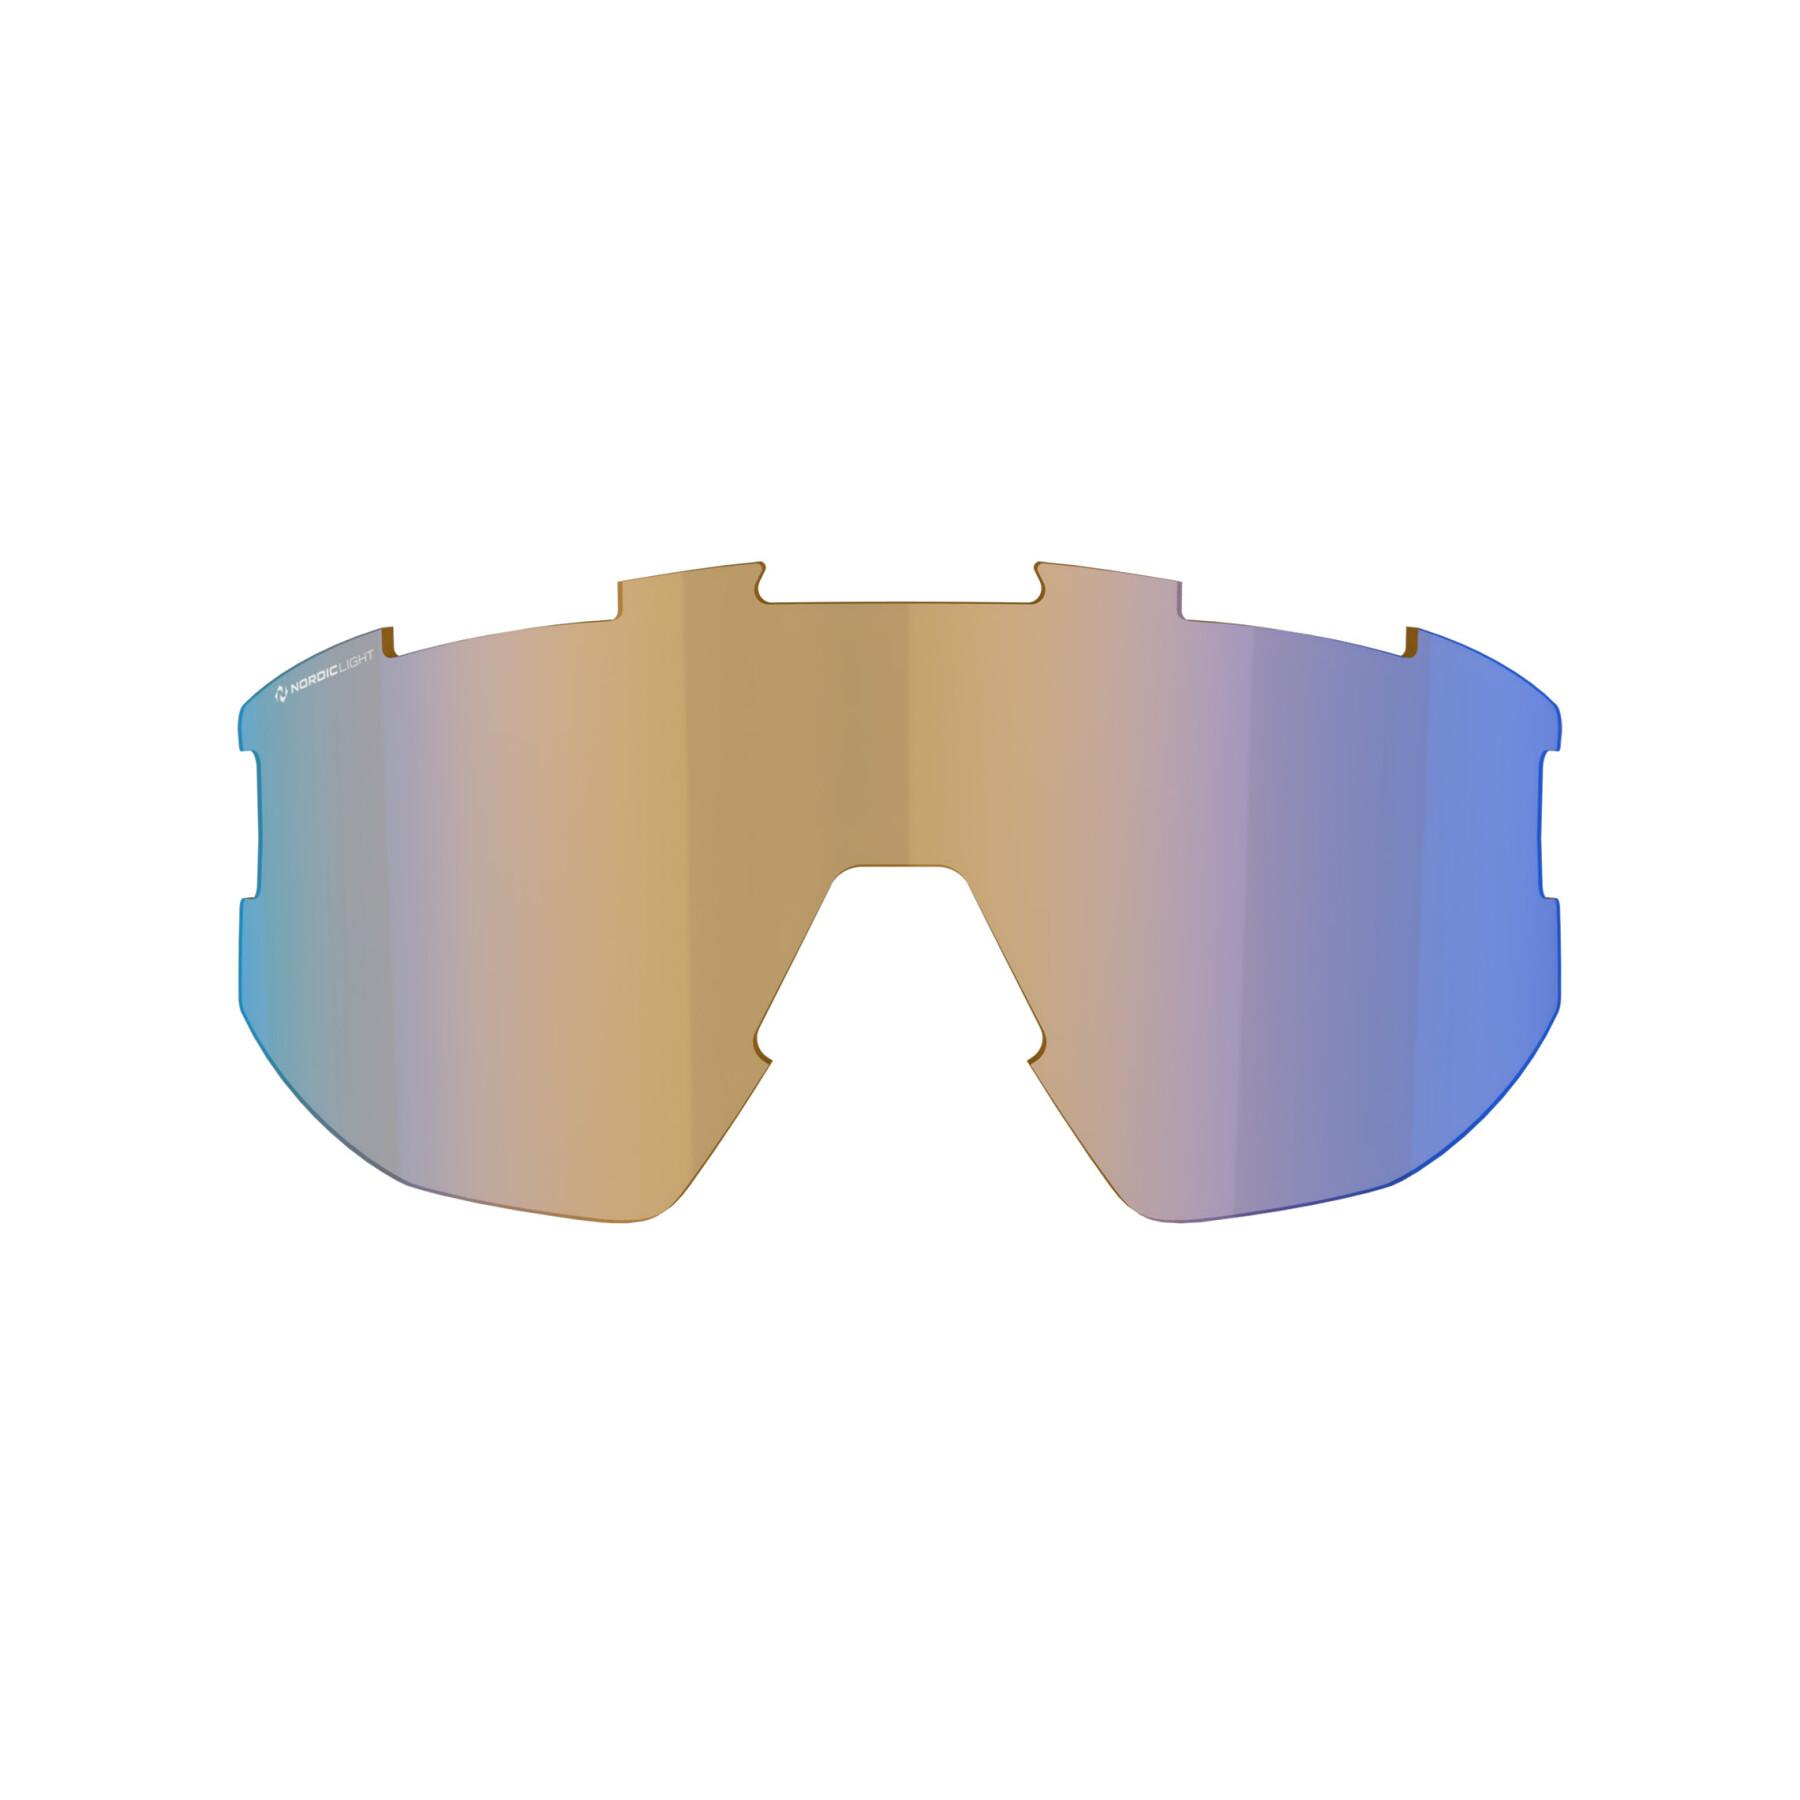 Zapasowe soczewki do okularów Bliz Vision nano optic